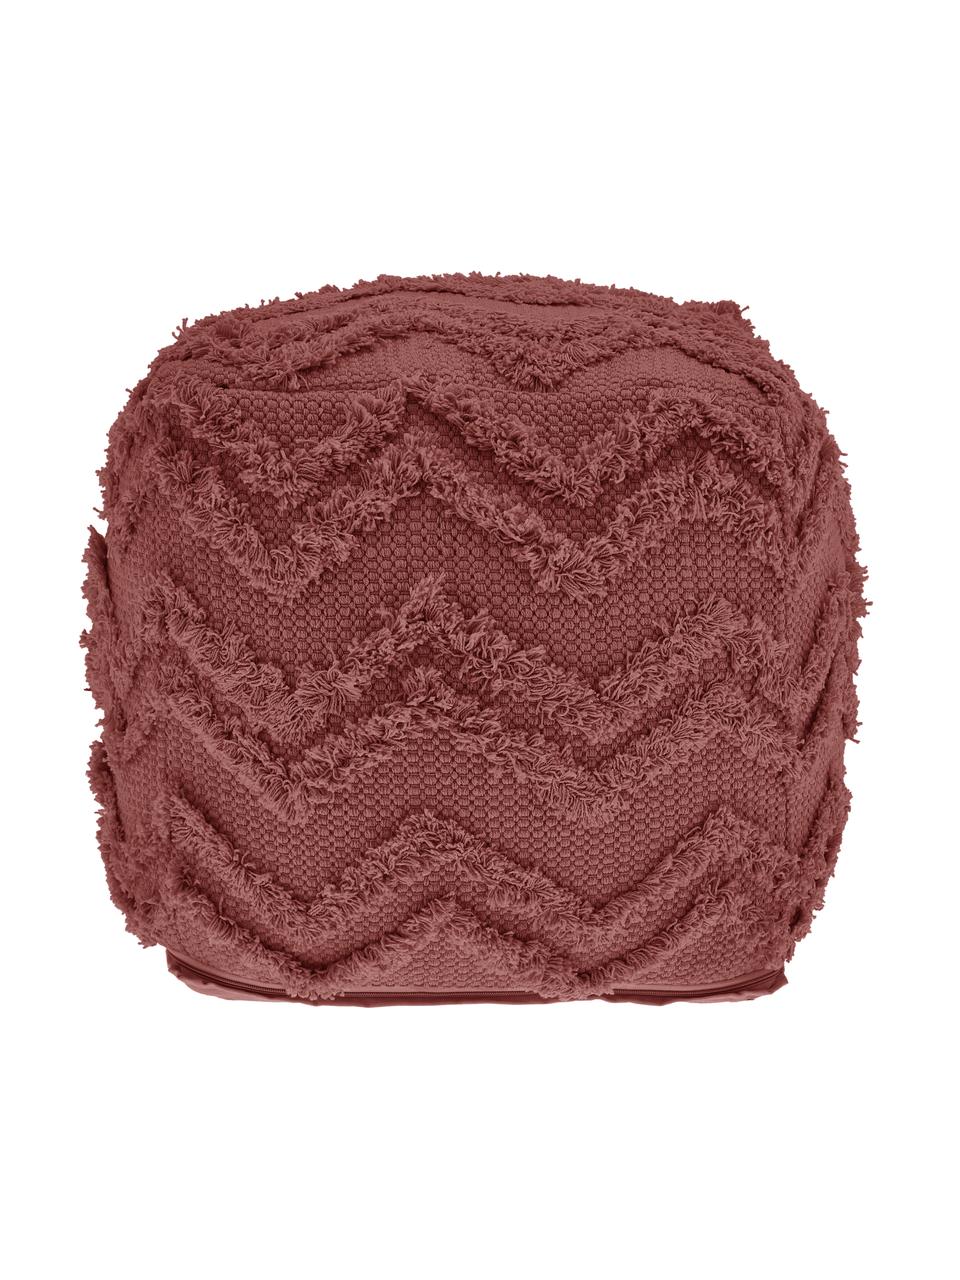 Ręcznie tuftowany puf w stylu boho Akesha, Tapicerka: bawełna, Rdzawoczerwona tkanina, S 50 x W 50 cm